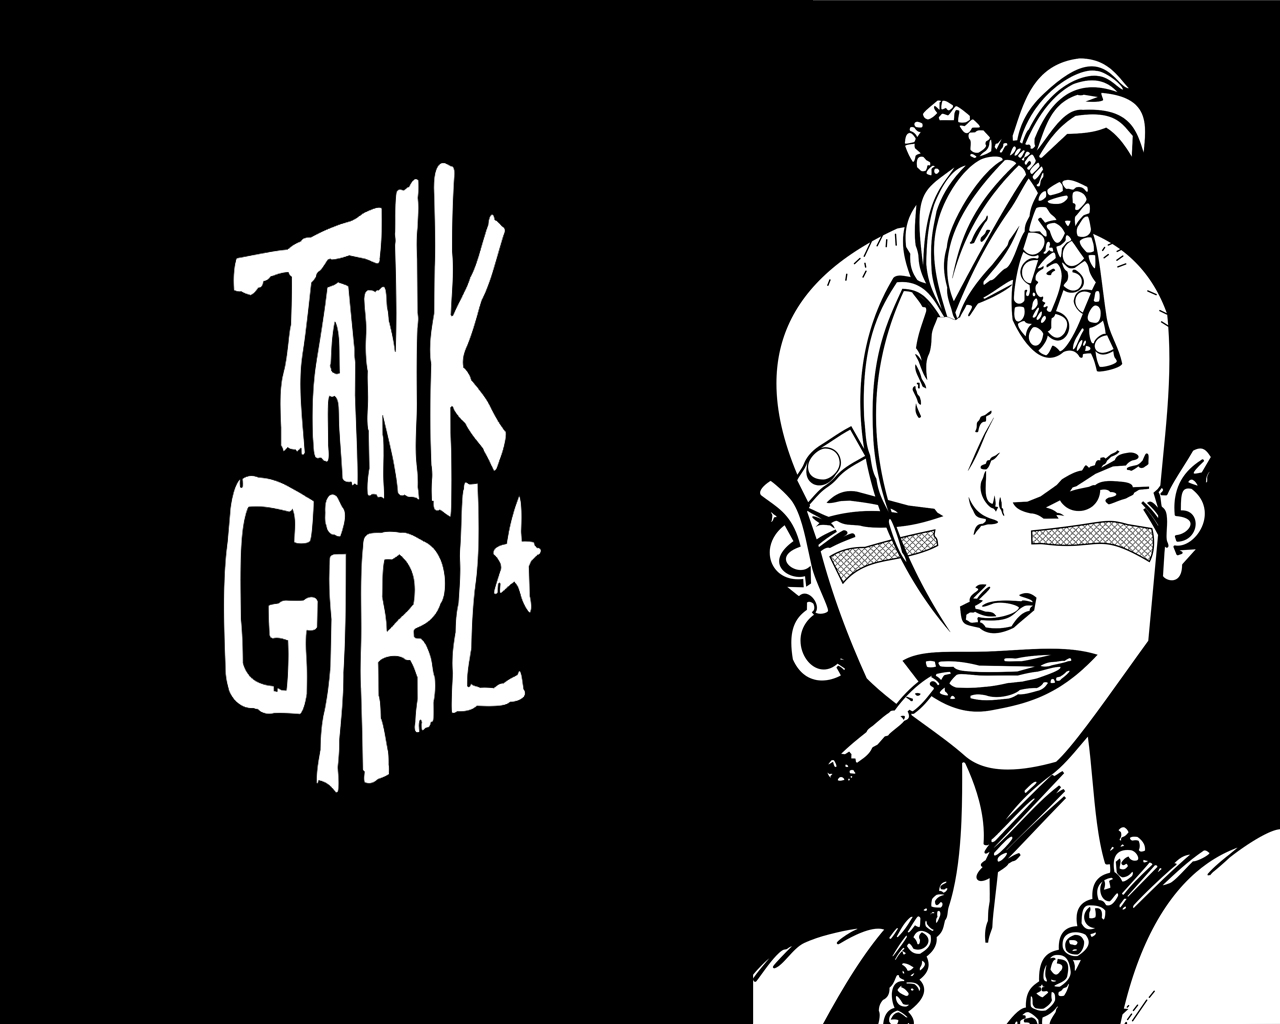 vertigo and tank girl